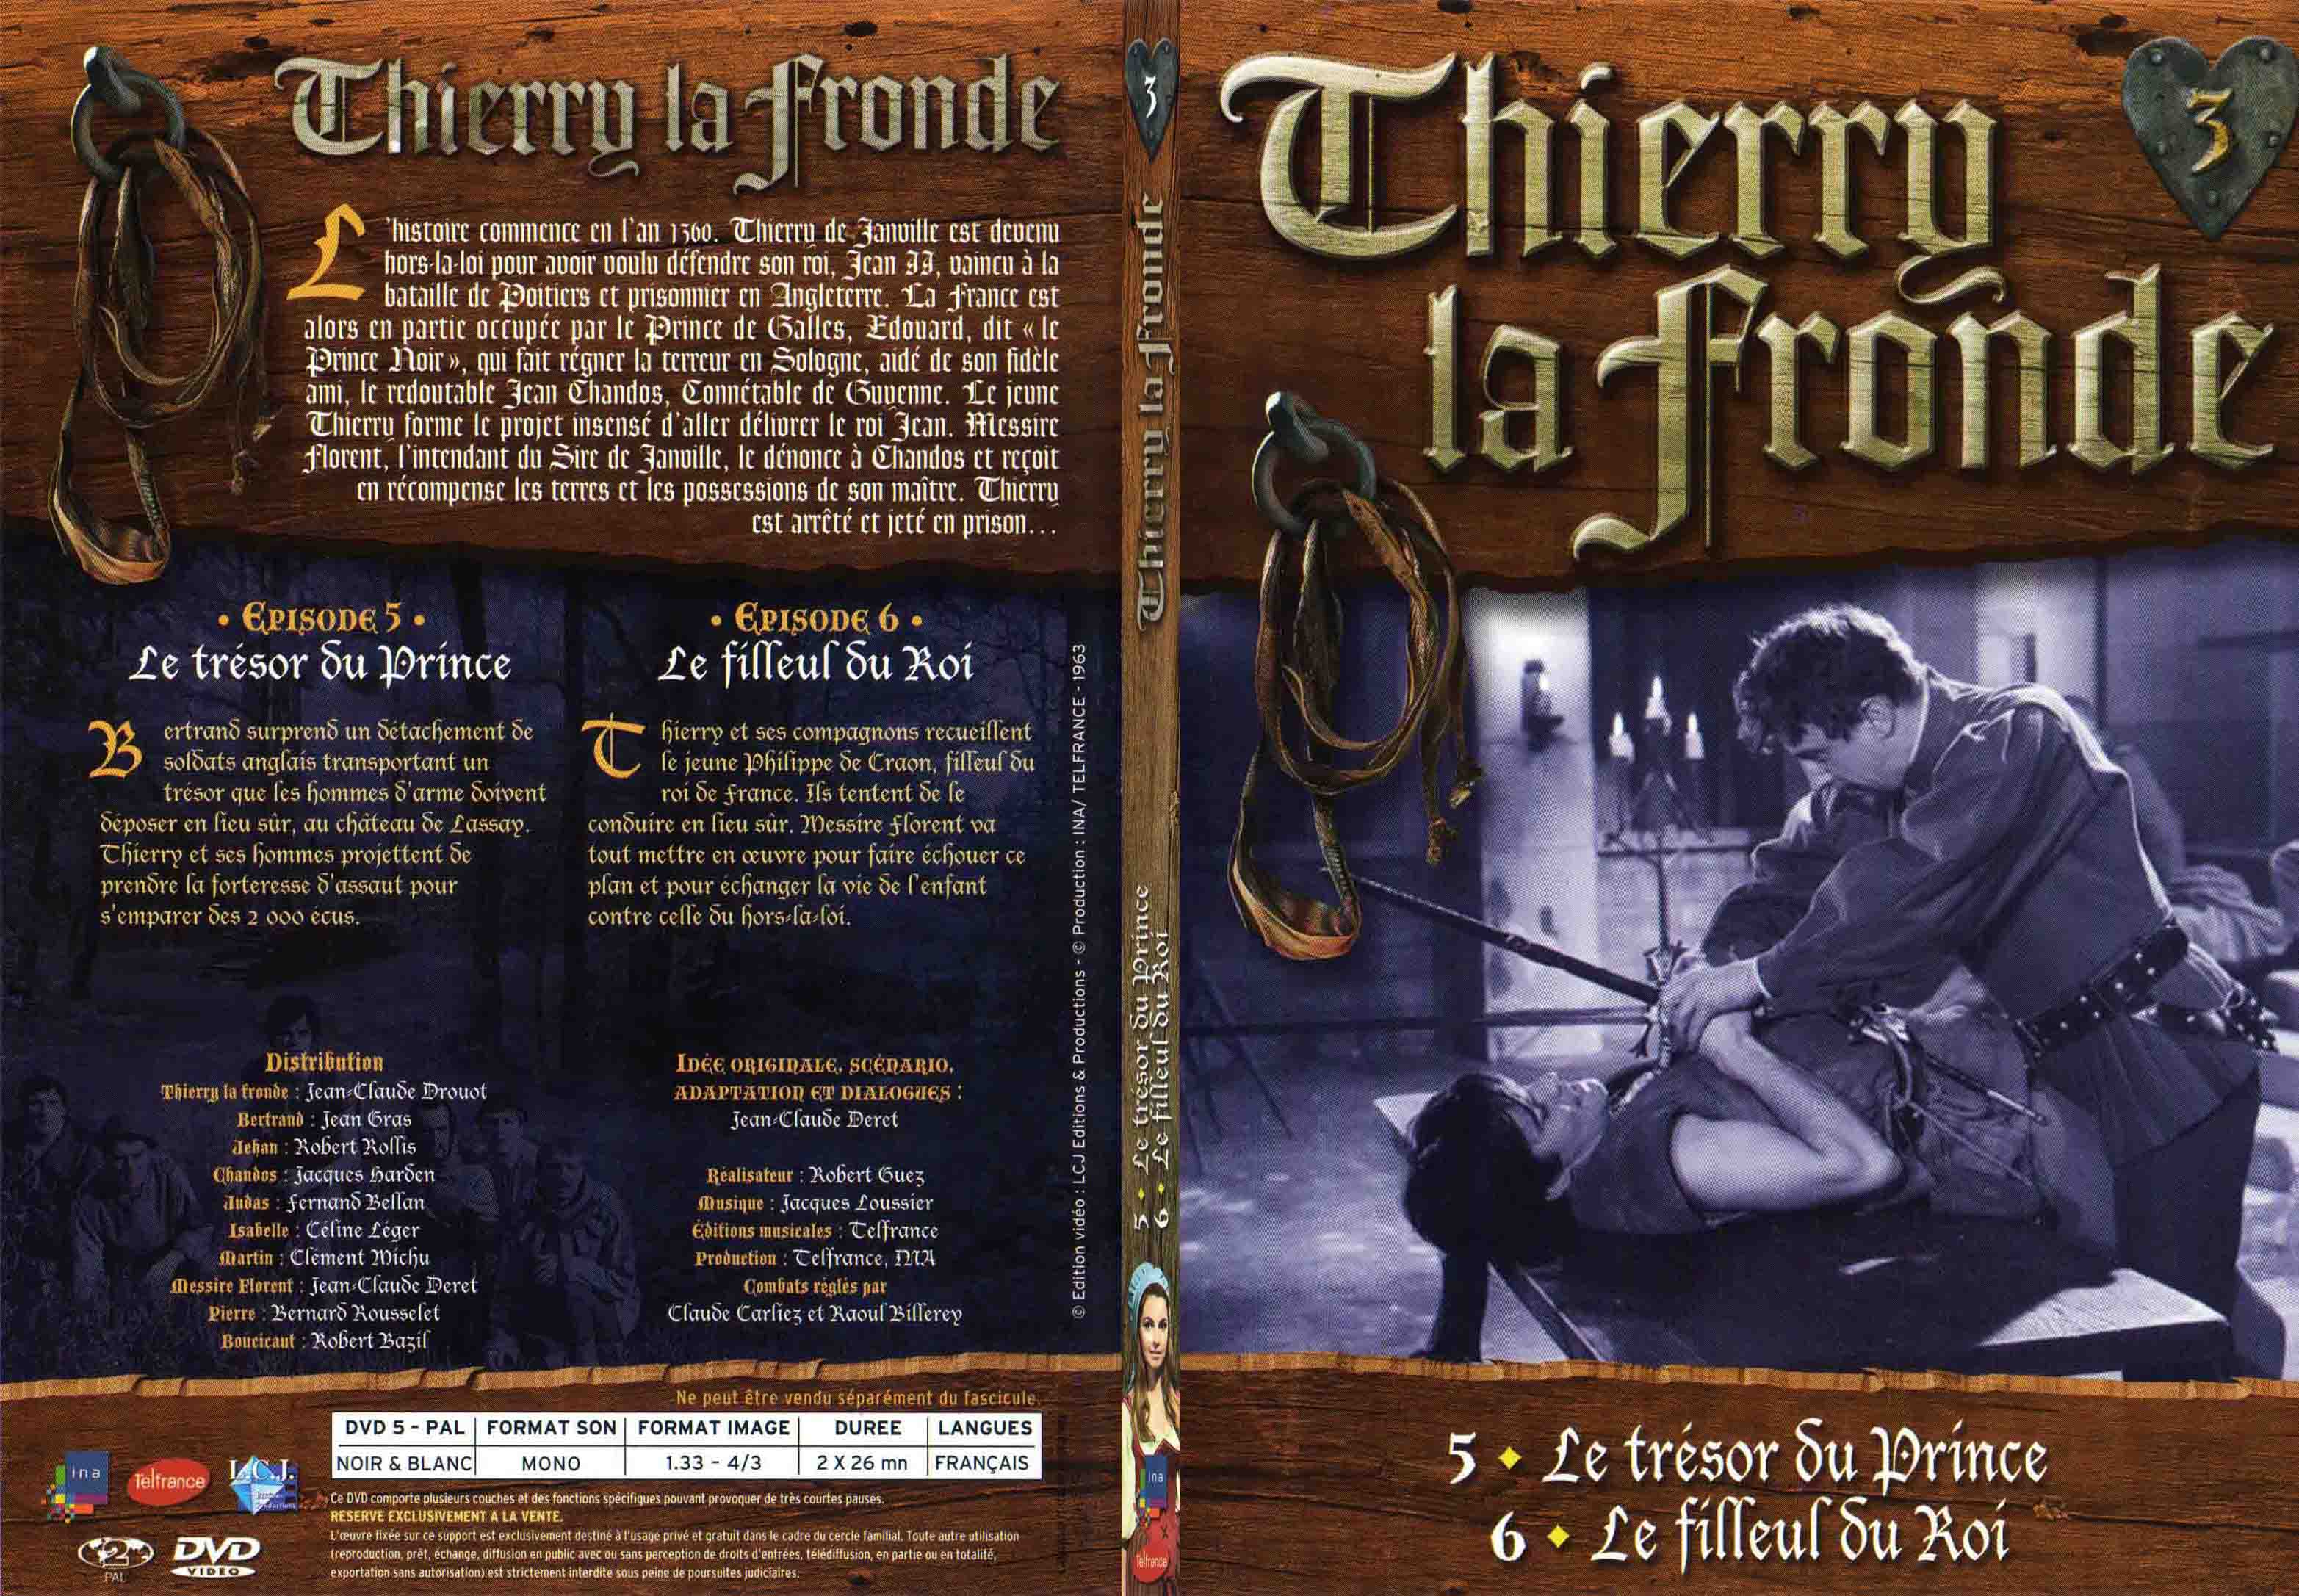 Jaquette DVD Thierry la Fronde vol 03 - SLIM